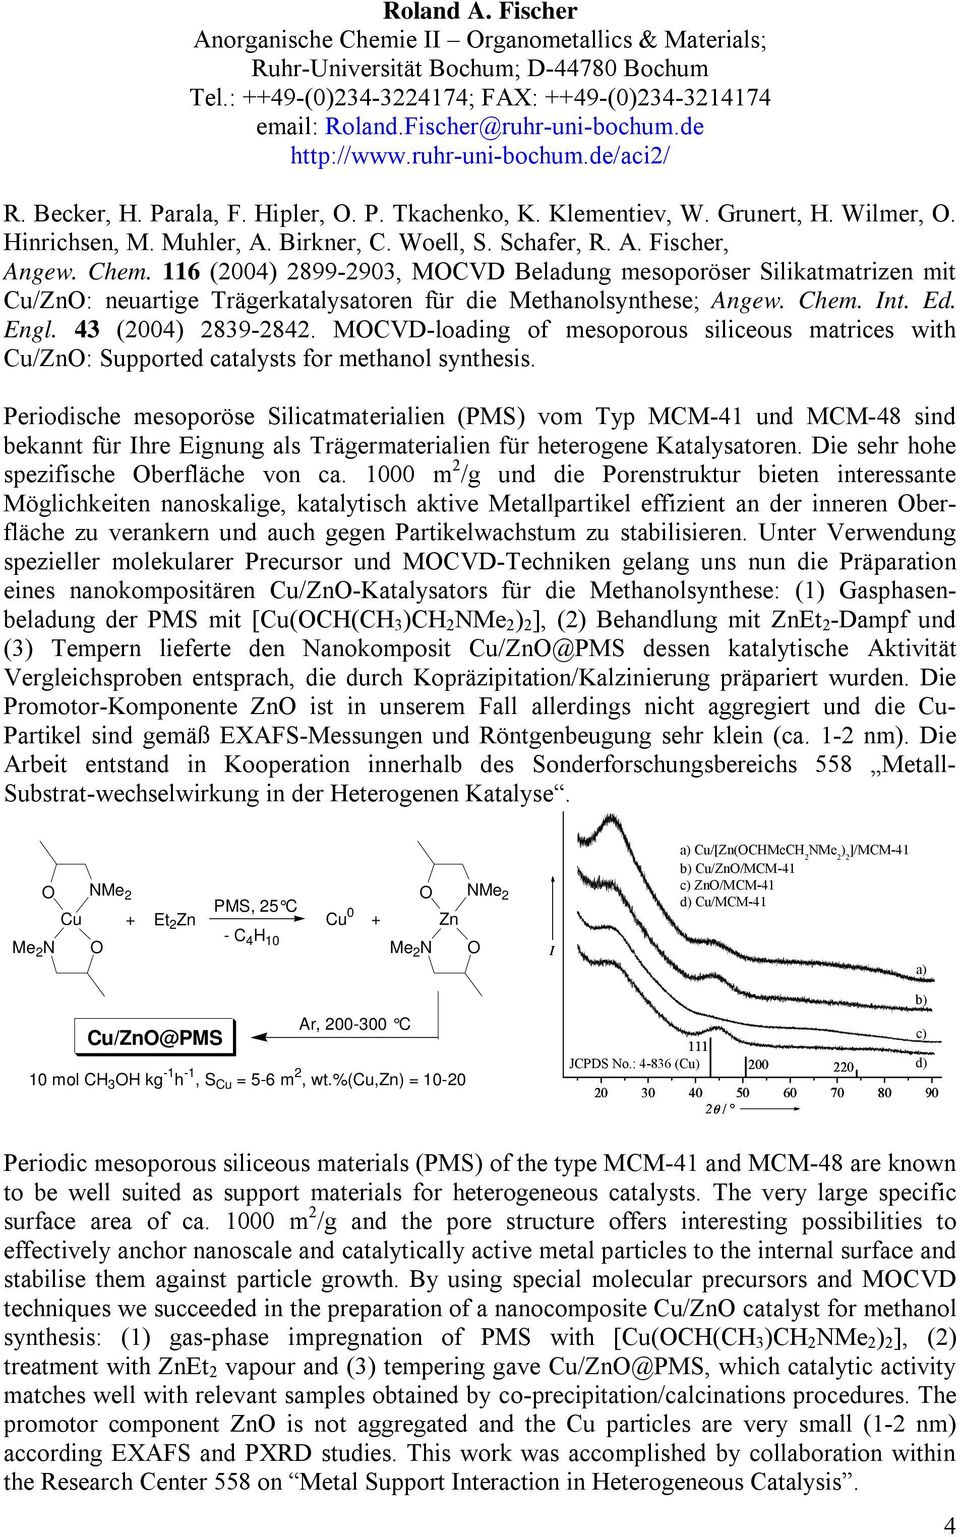 Chem. 116 (2004) 2899-2903, MOCVD Beladung mesoporöser Silikatmatrizen mit Cu/ZnO: neuartige Trägerkatalysatoren für die Methanolsynthese; Angew. Chem. Int. Ed. Engl. 43 (2004) 2839-2842.